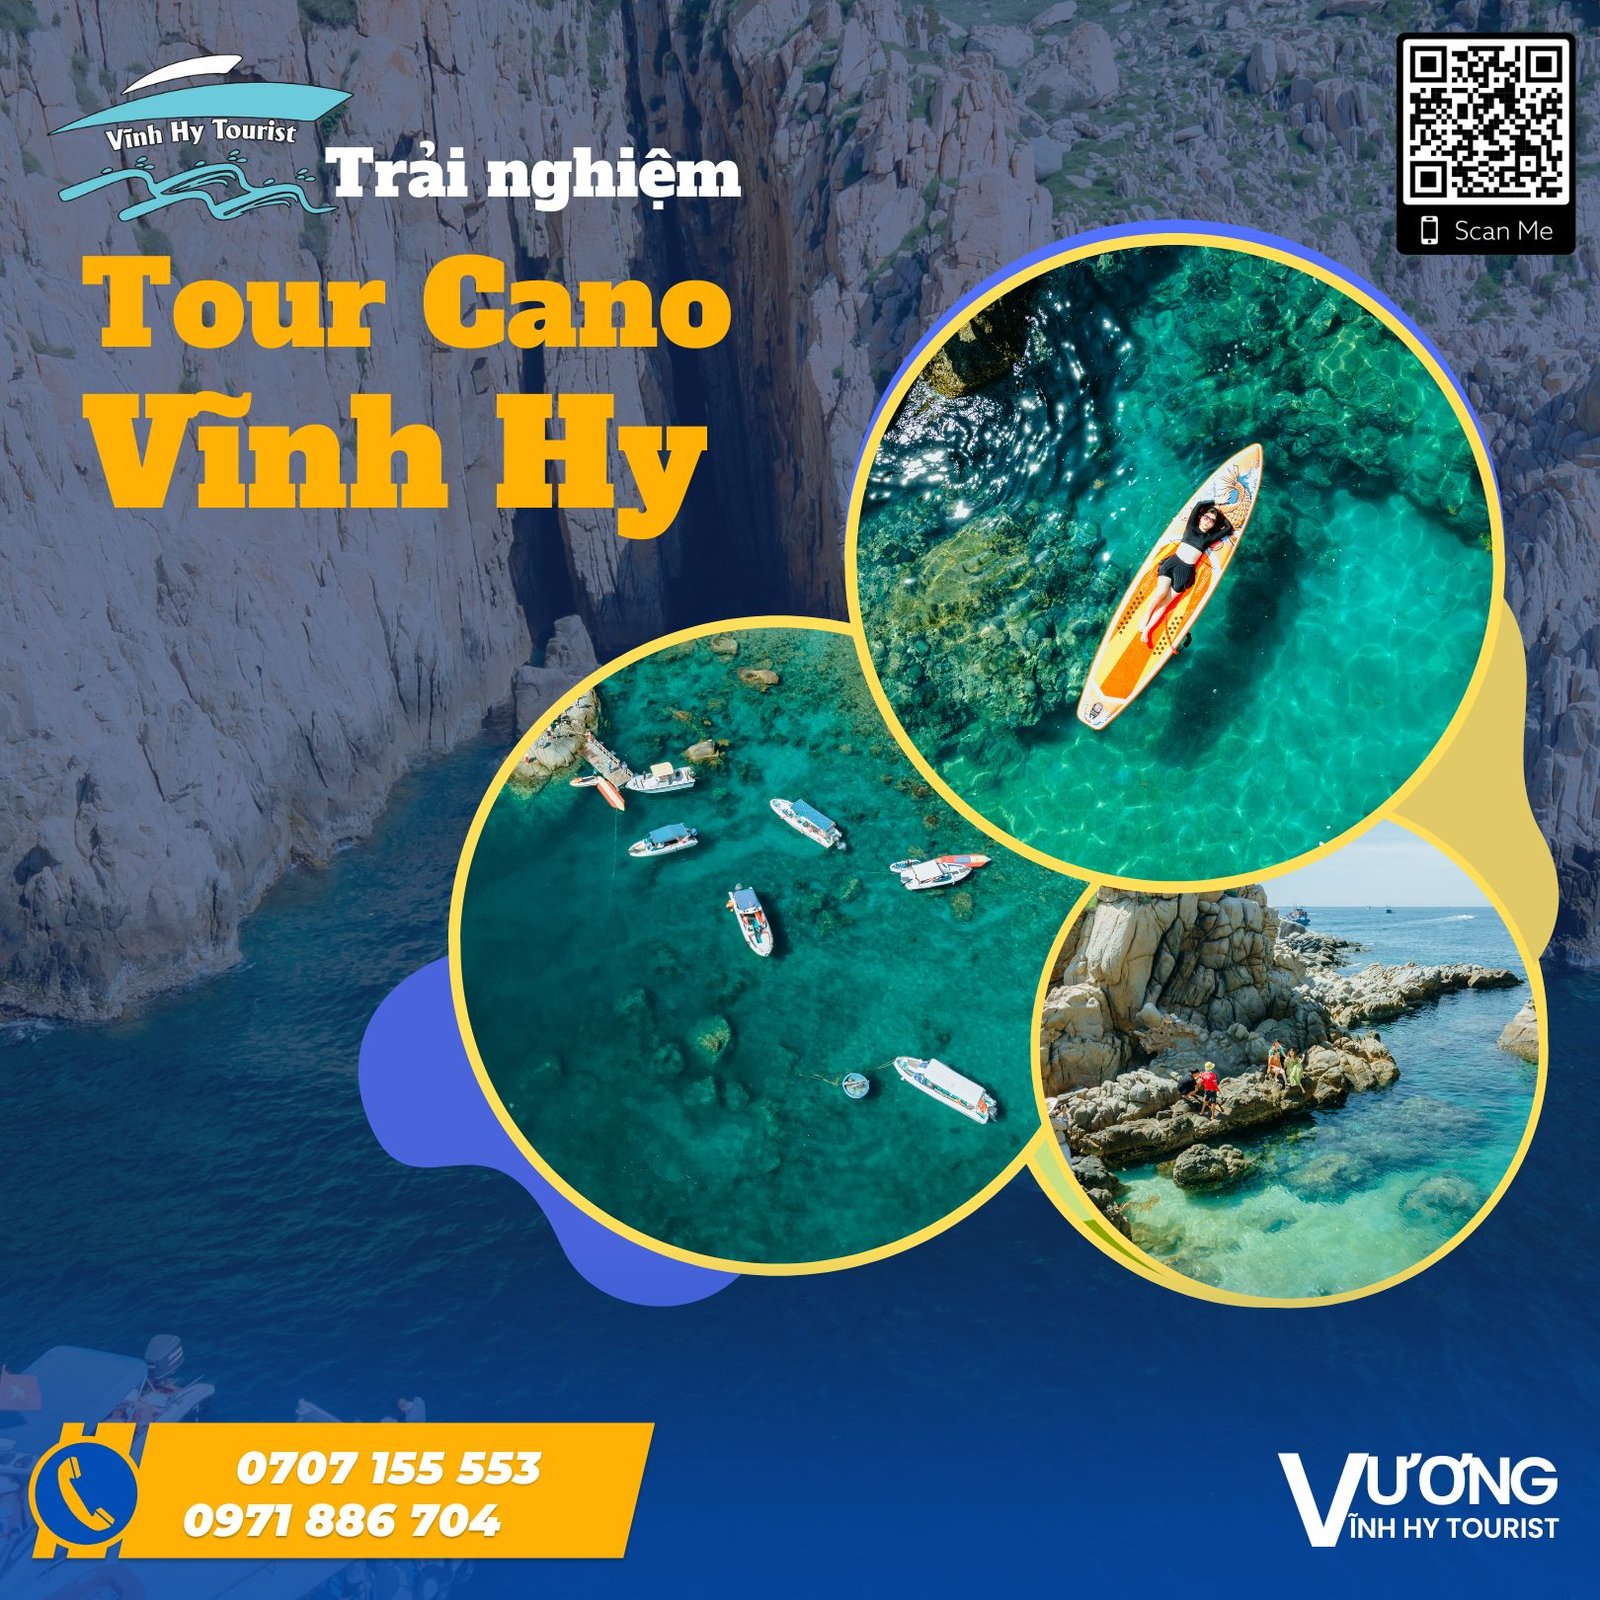 Trải nghiệm tour cano Vĩnh Hy được rất nhiều du khách lựa chọn. Ảnh: Vương Vĩnh Hy Tourist